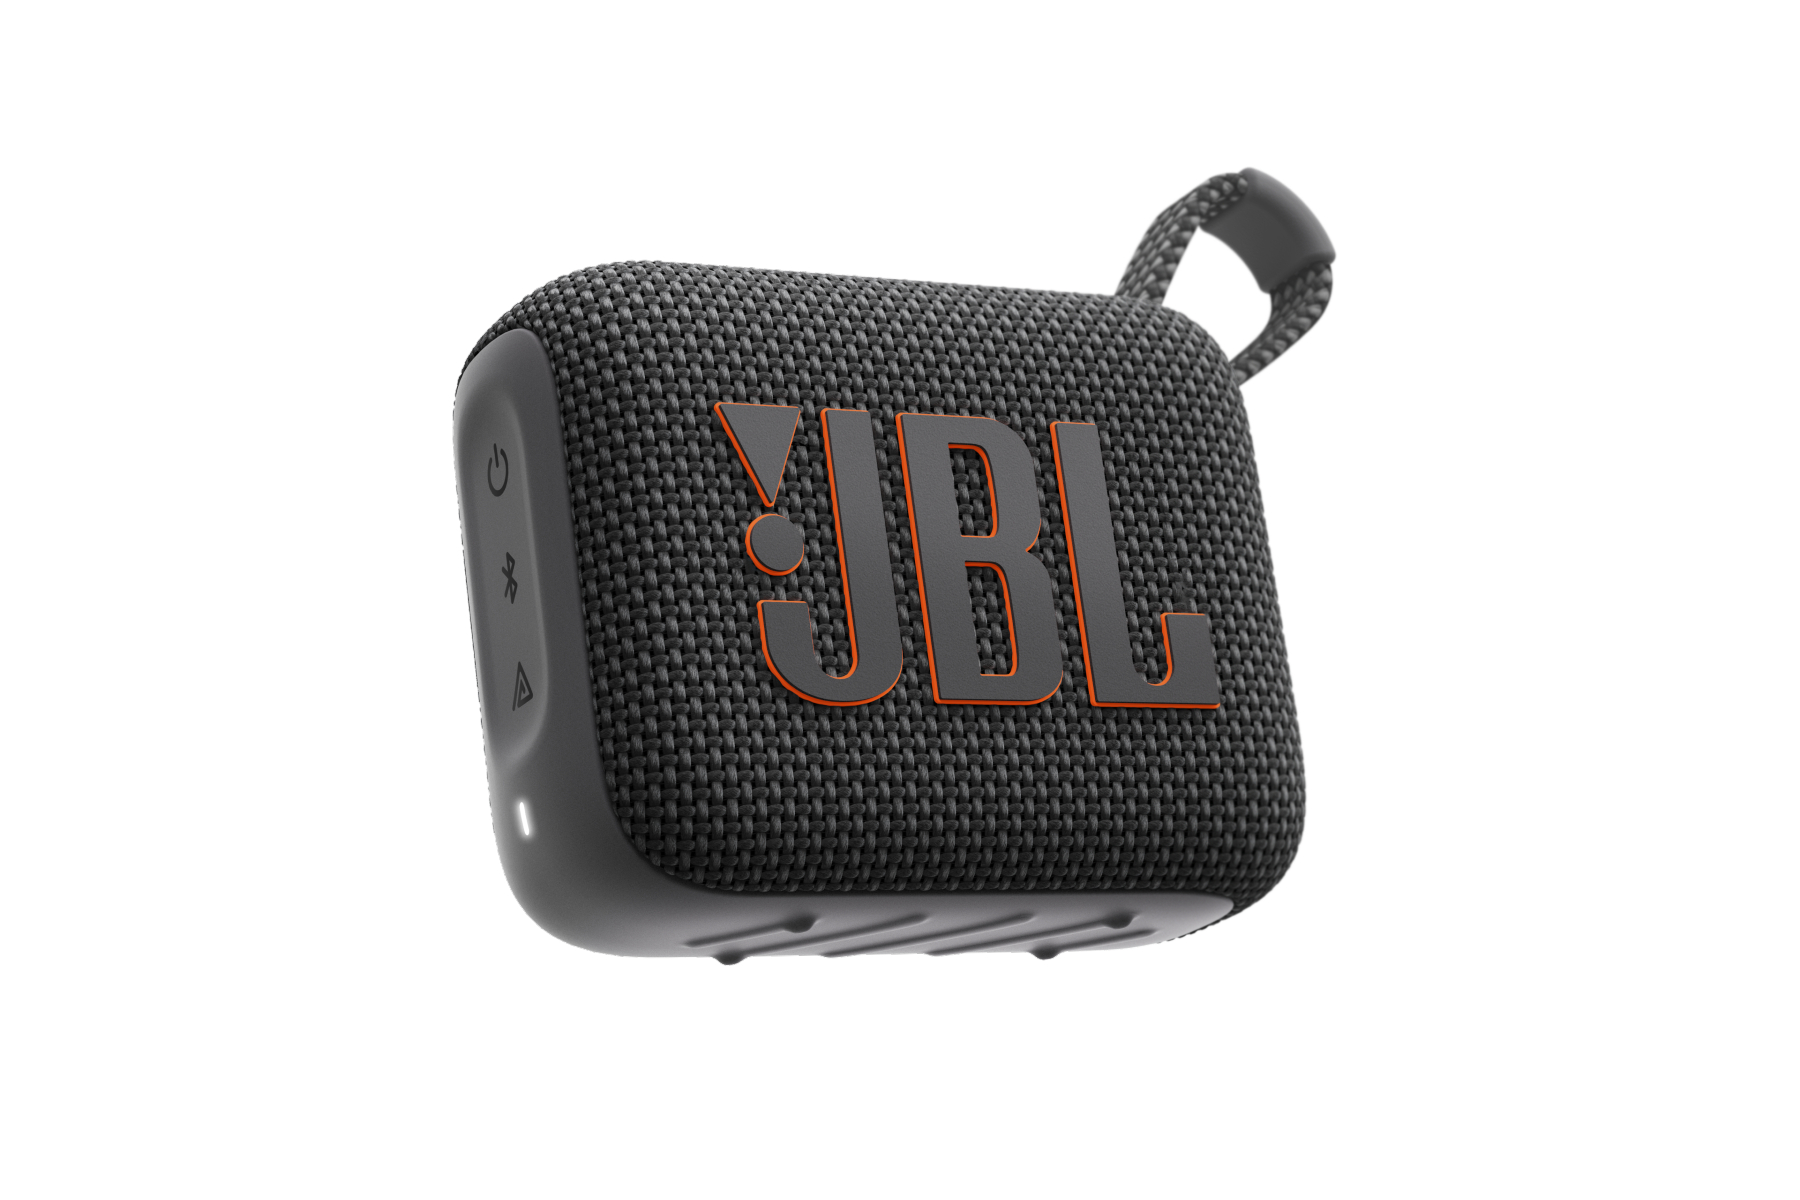 IMAGEN EMBARGADA: el altavoz Bluetooth portátil JBL Go 4.